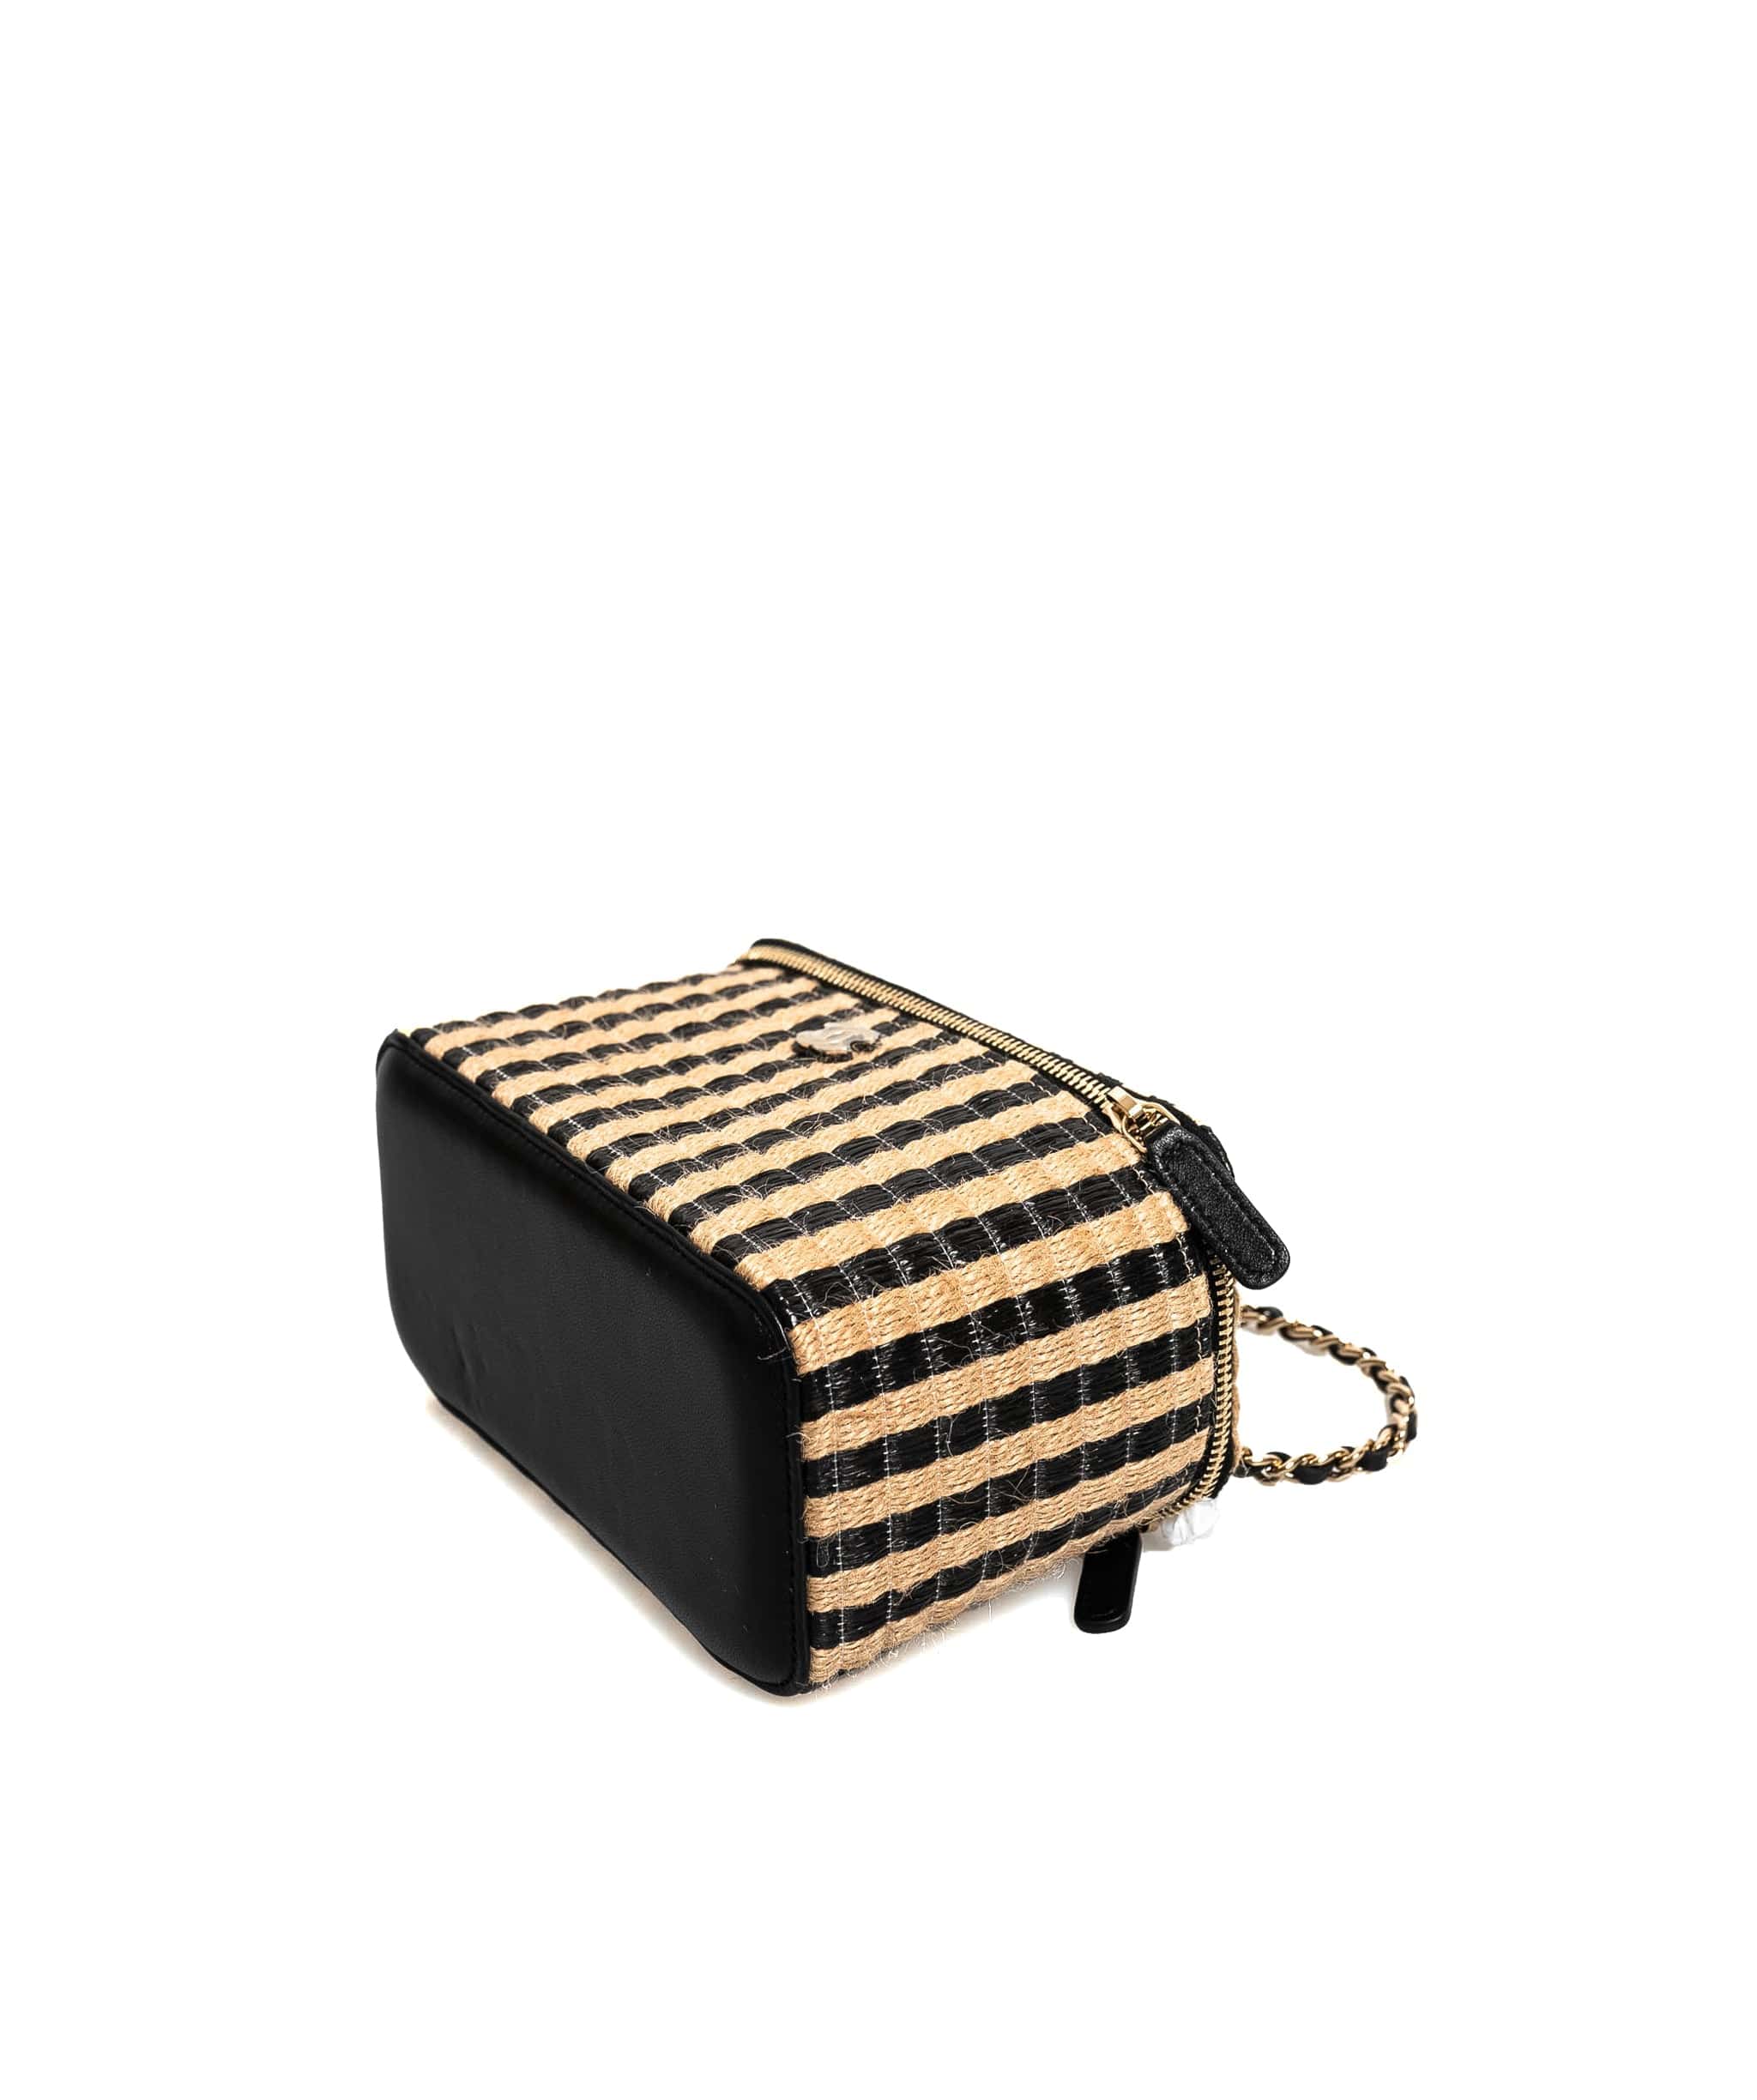 Chanel Chanel Black Wicka Basket Crossbody Bag  - AGL1548